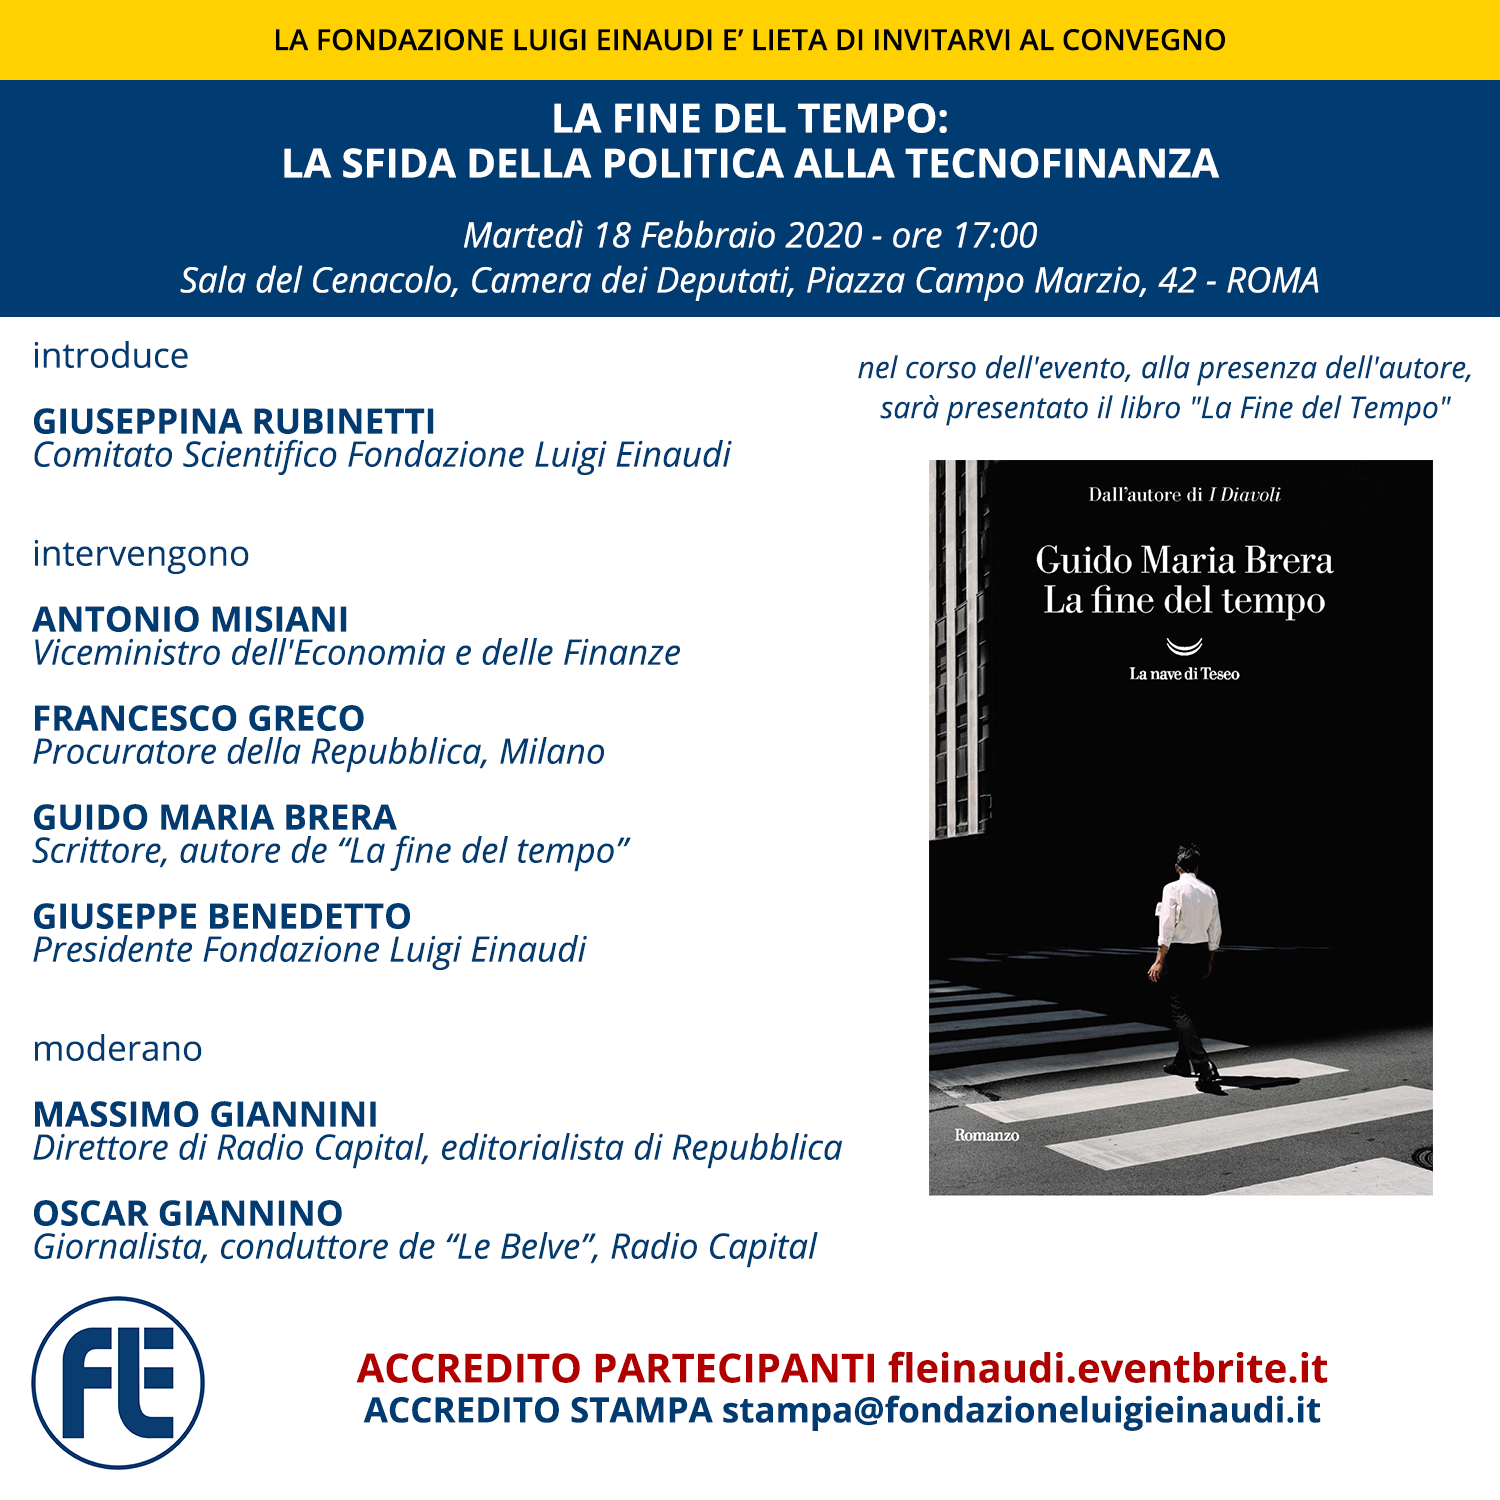 End of Time: politics vs Financial Technology – Book presentation: “La fine del Tempo” by Guido Maria Brera